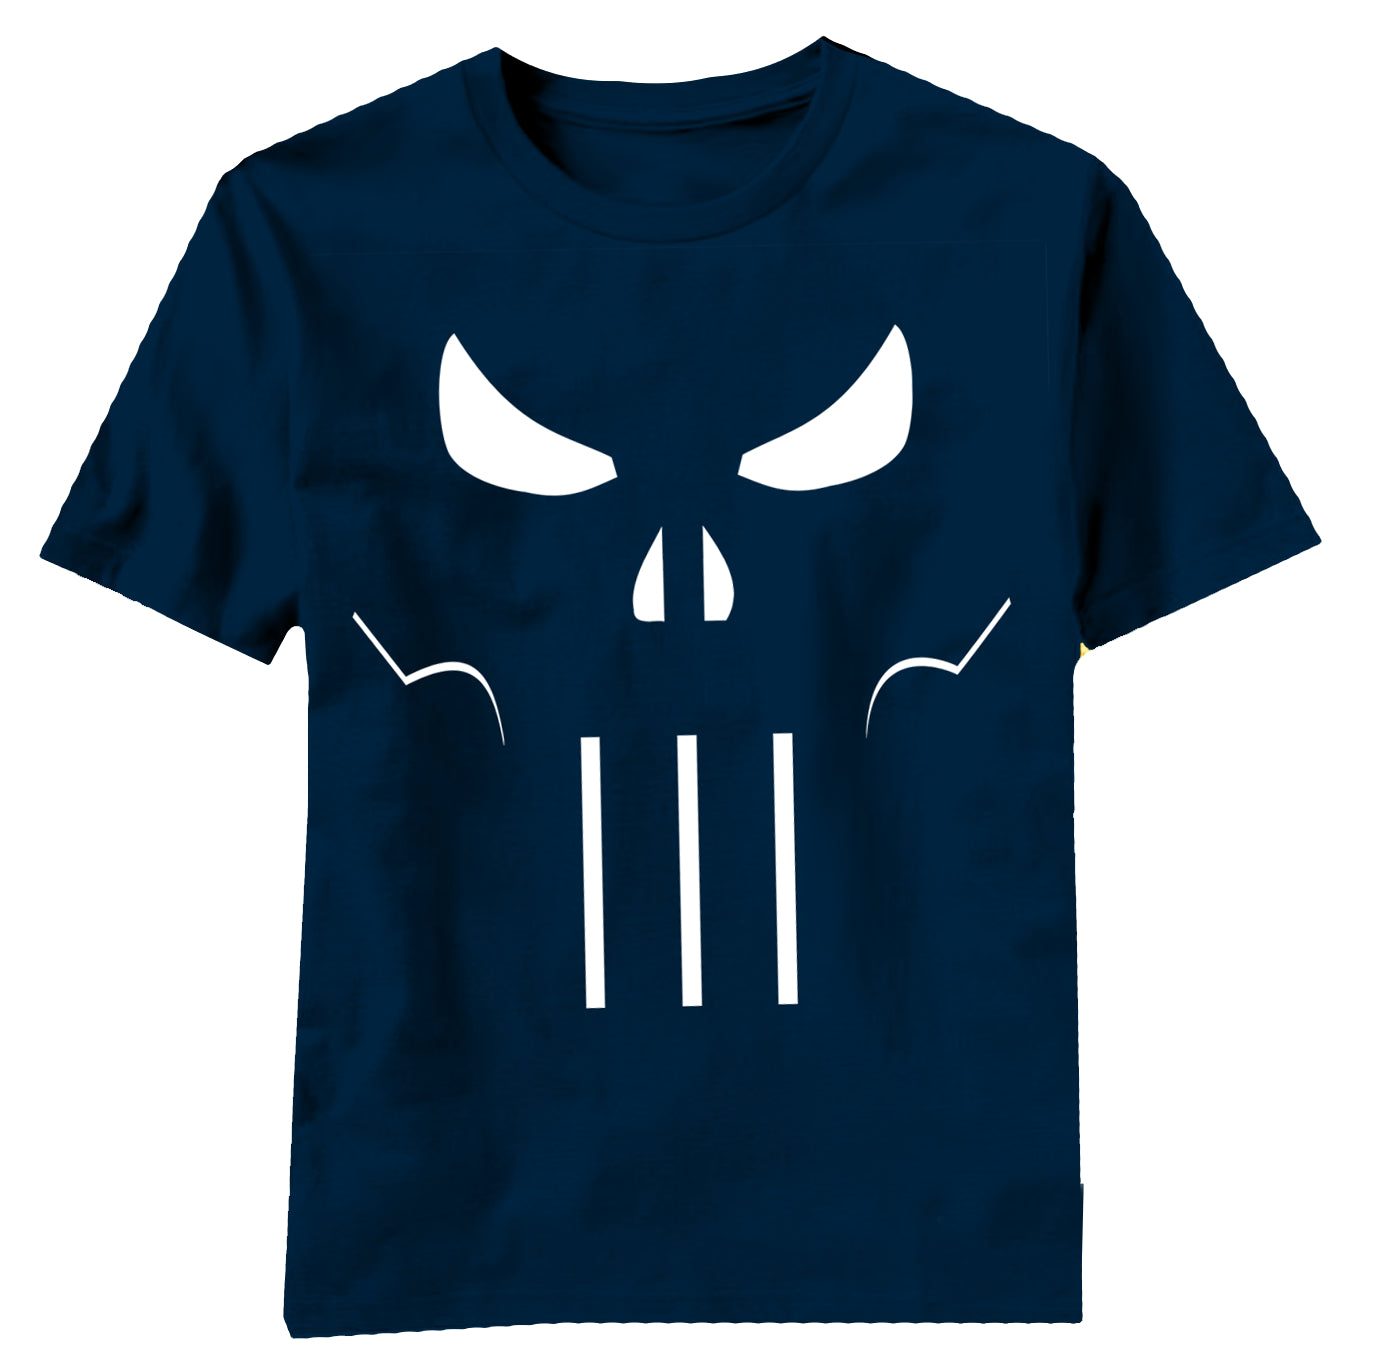 Punisher Beyond Shadows Navy T-Shirt Large